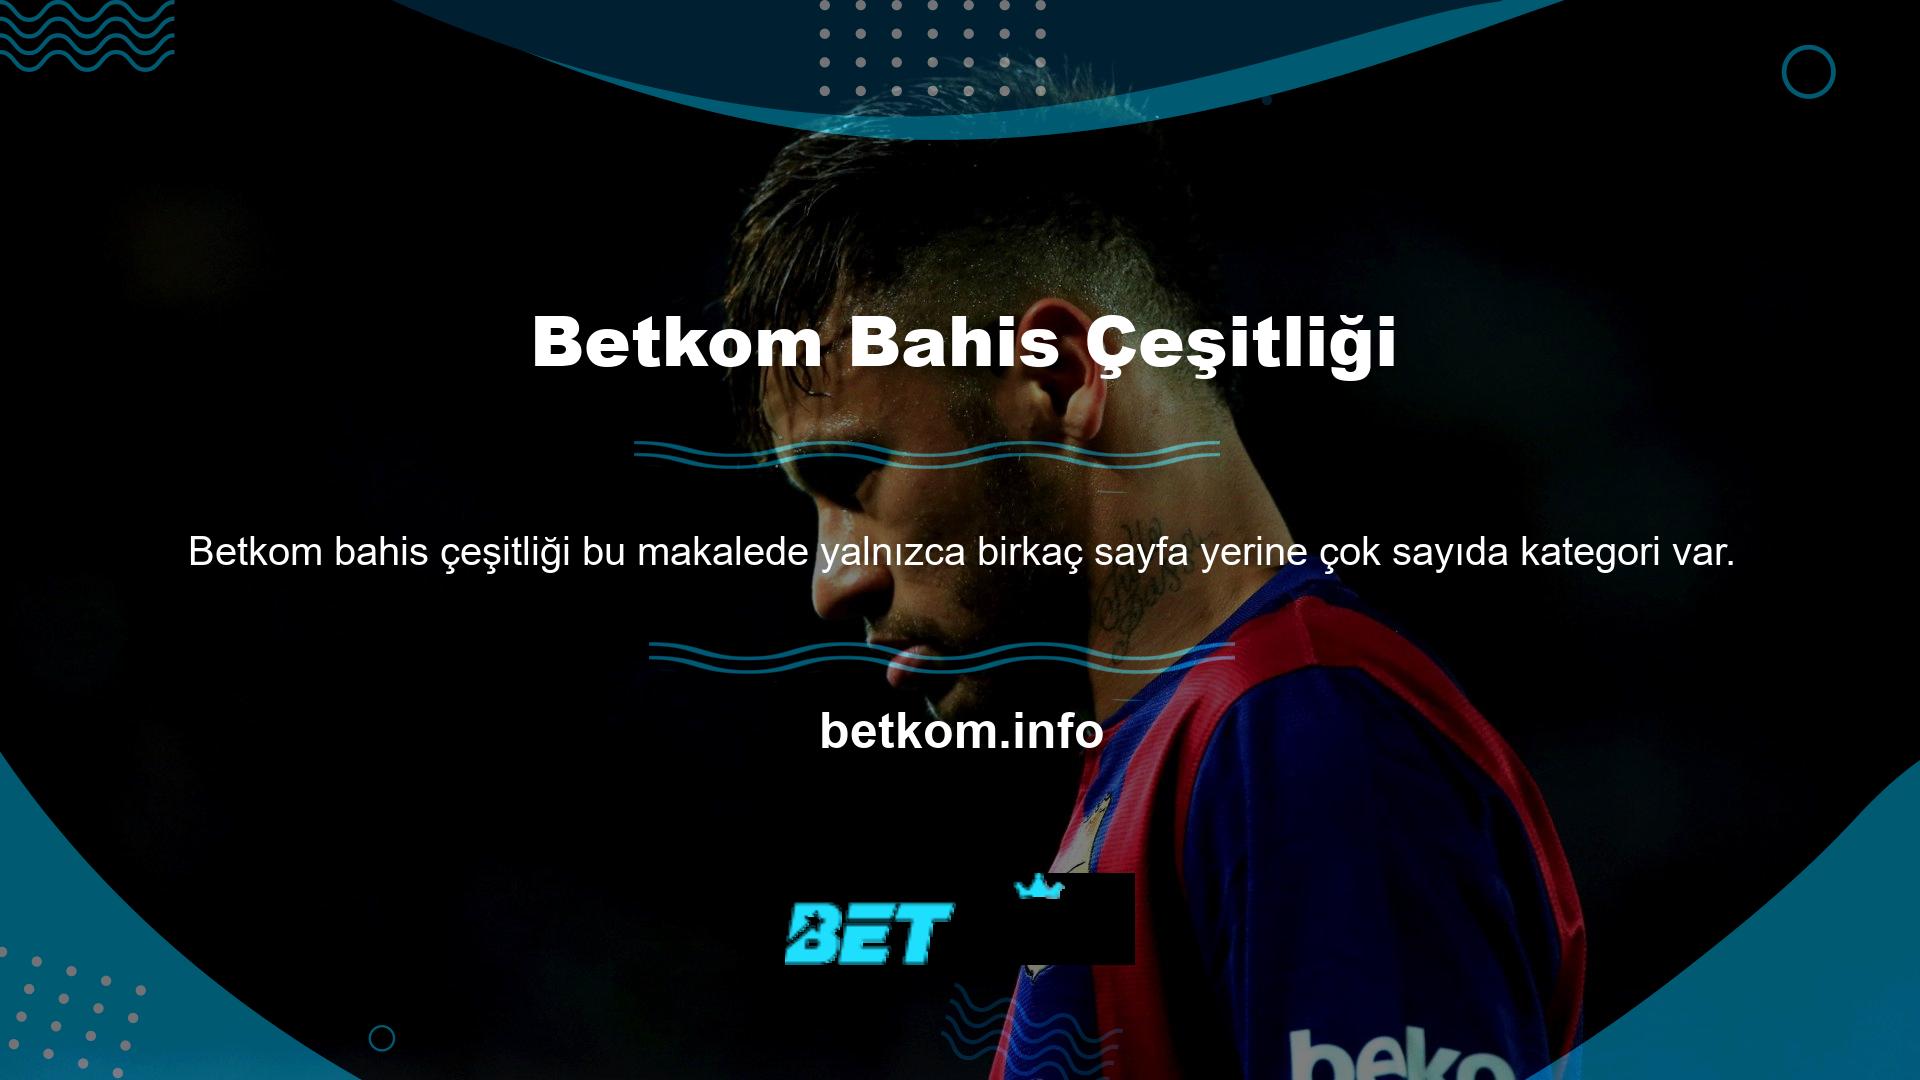 Betkom web sitesi yorumcuları mobil cihazlarını kullanarak bahis bağlantıları oluşturabilirler